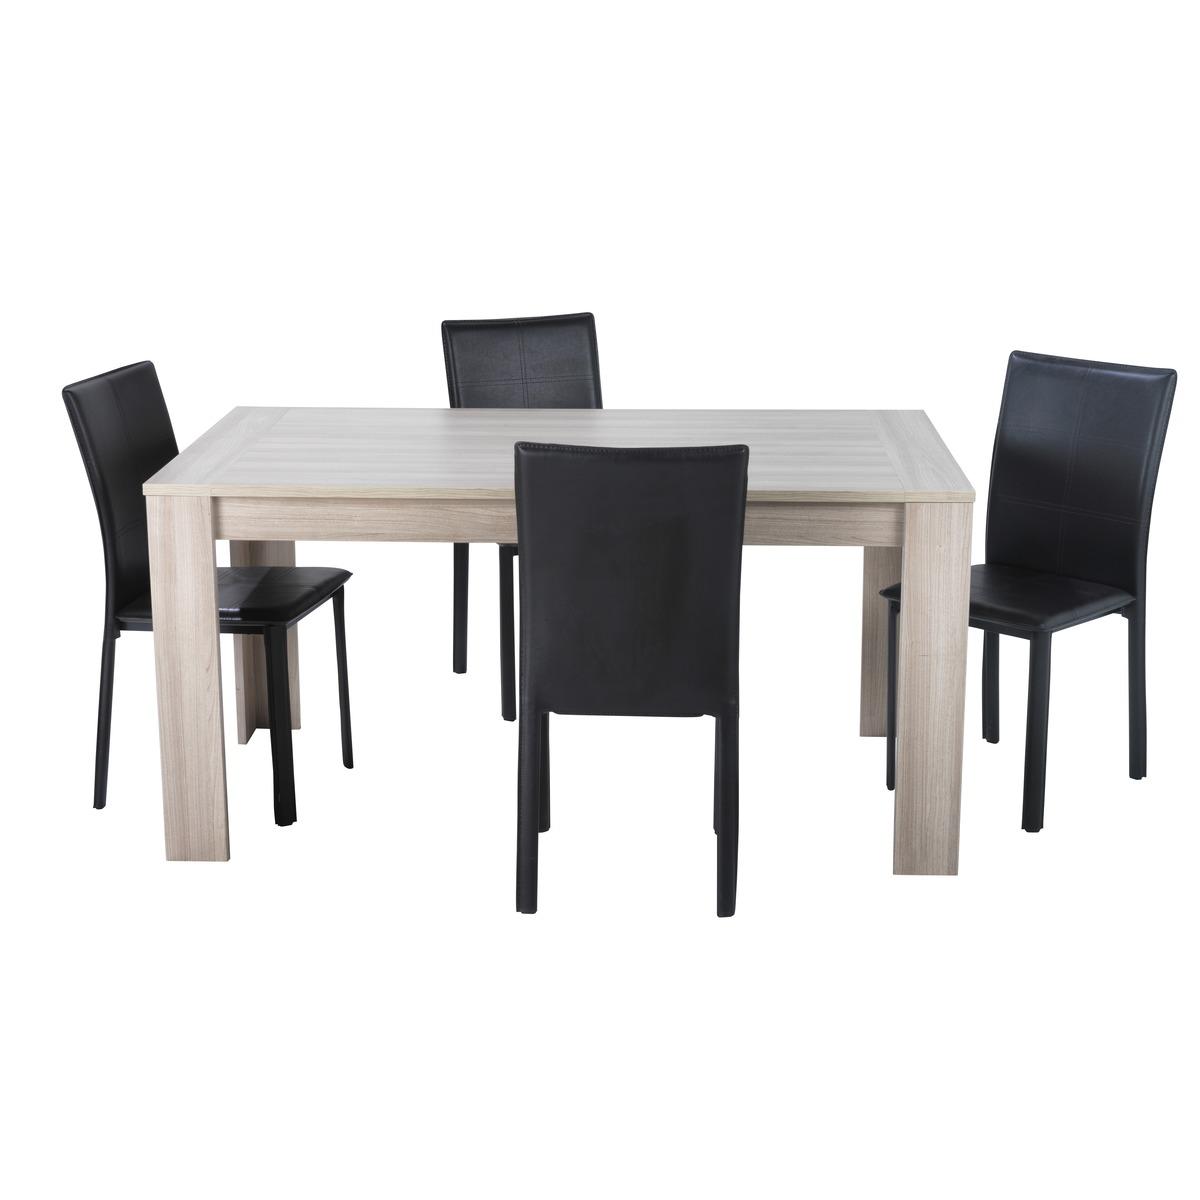 Table rectangulaire bruges en bois - 160 x 78,6 x H 88 cm - Marron chêne